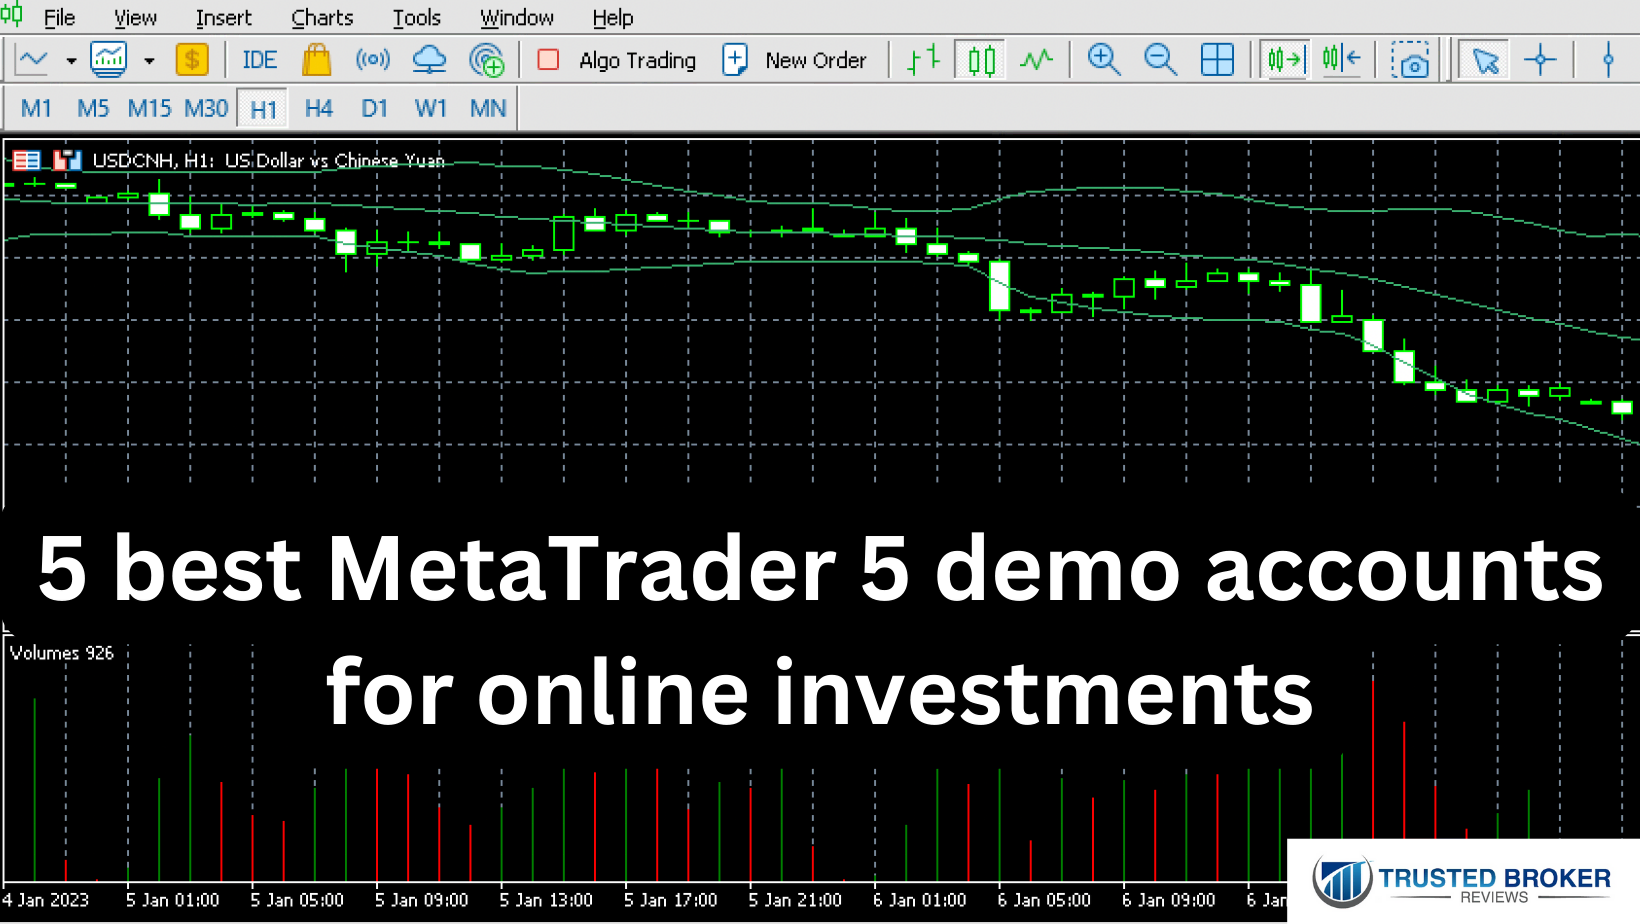 Çevrimiçi yatırımlar için en iyi 5 MetaTrader 5 demo hesabı